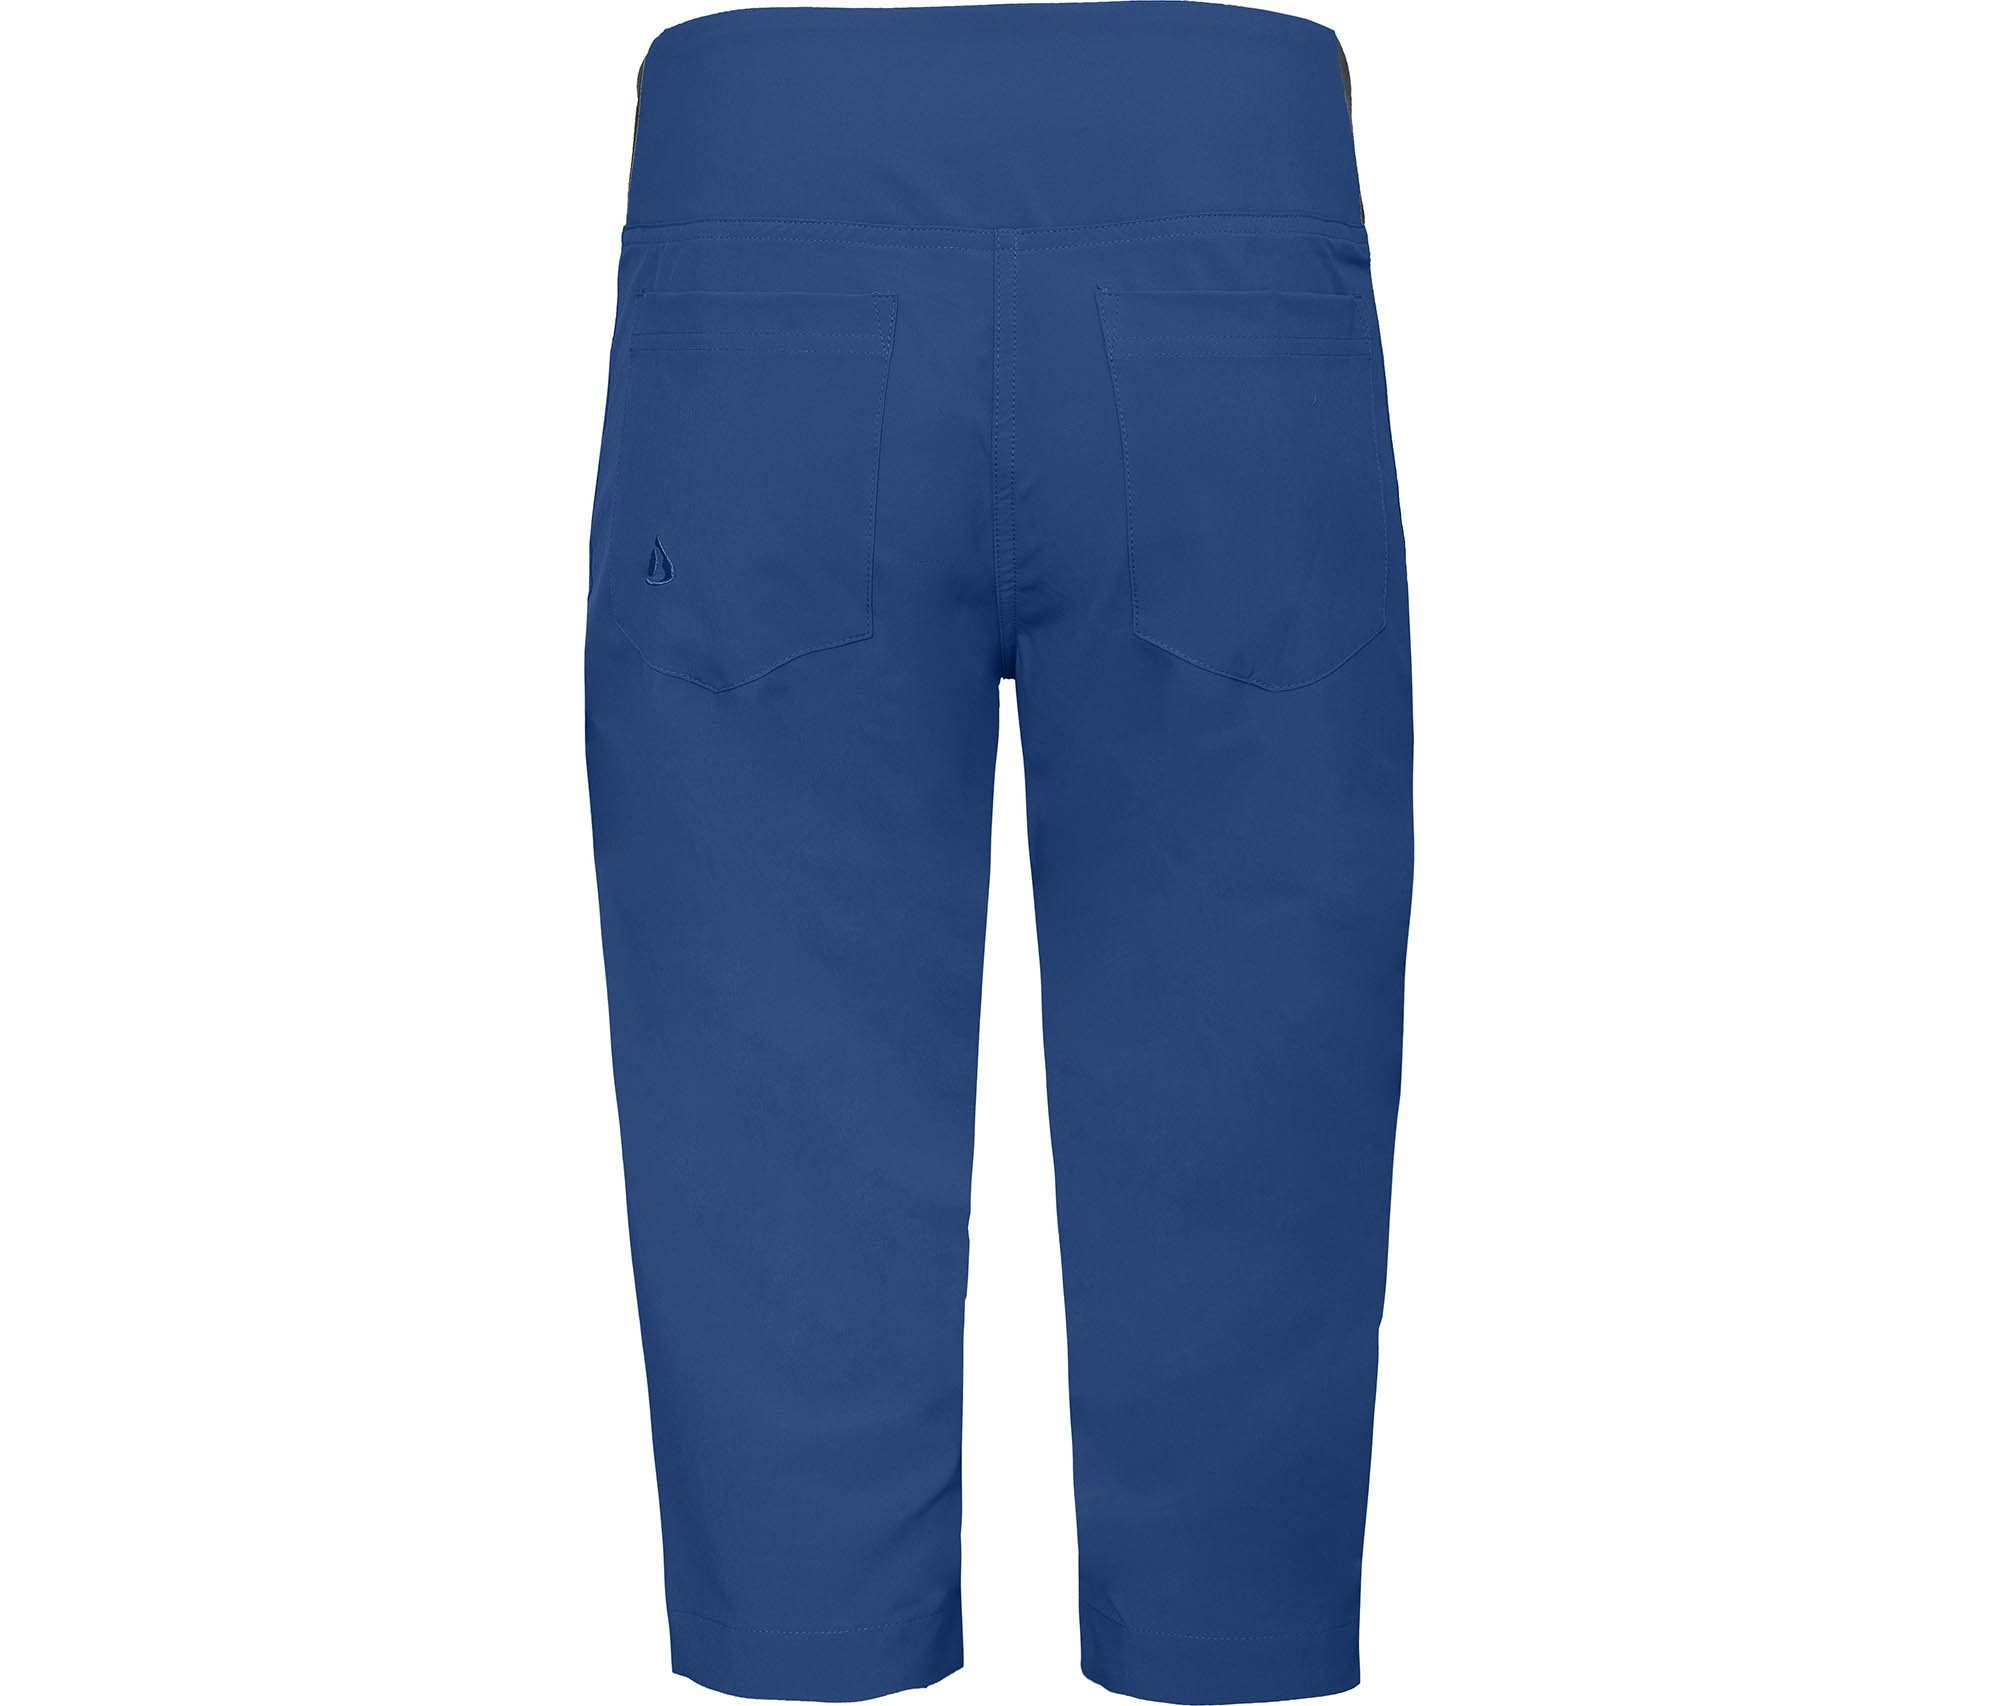 Wanderhose, Damen Vario elastisch, Normalgrößen, (slim) blau recycelt, Bergson Outdoorhose AALBORG 3/4 Capri sportlich,